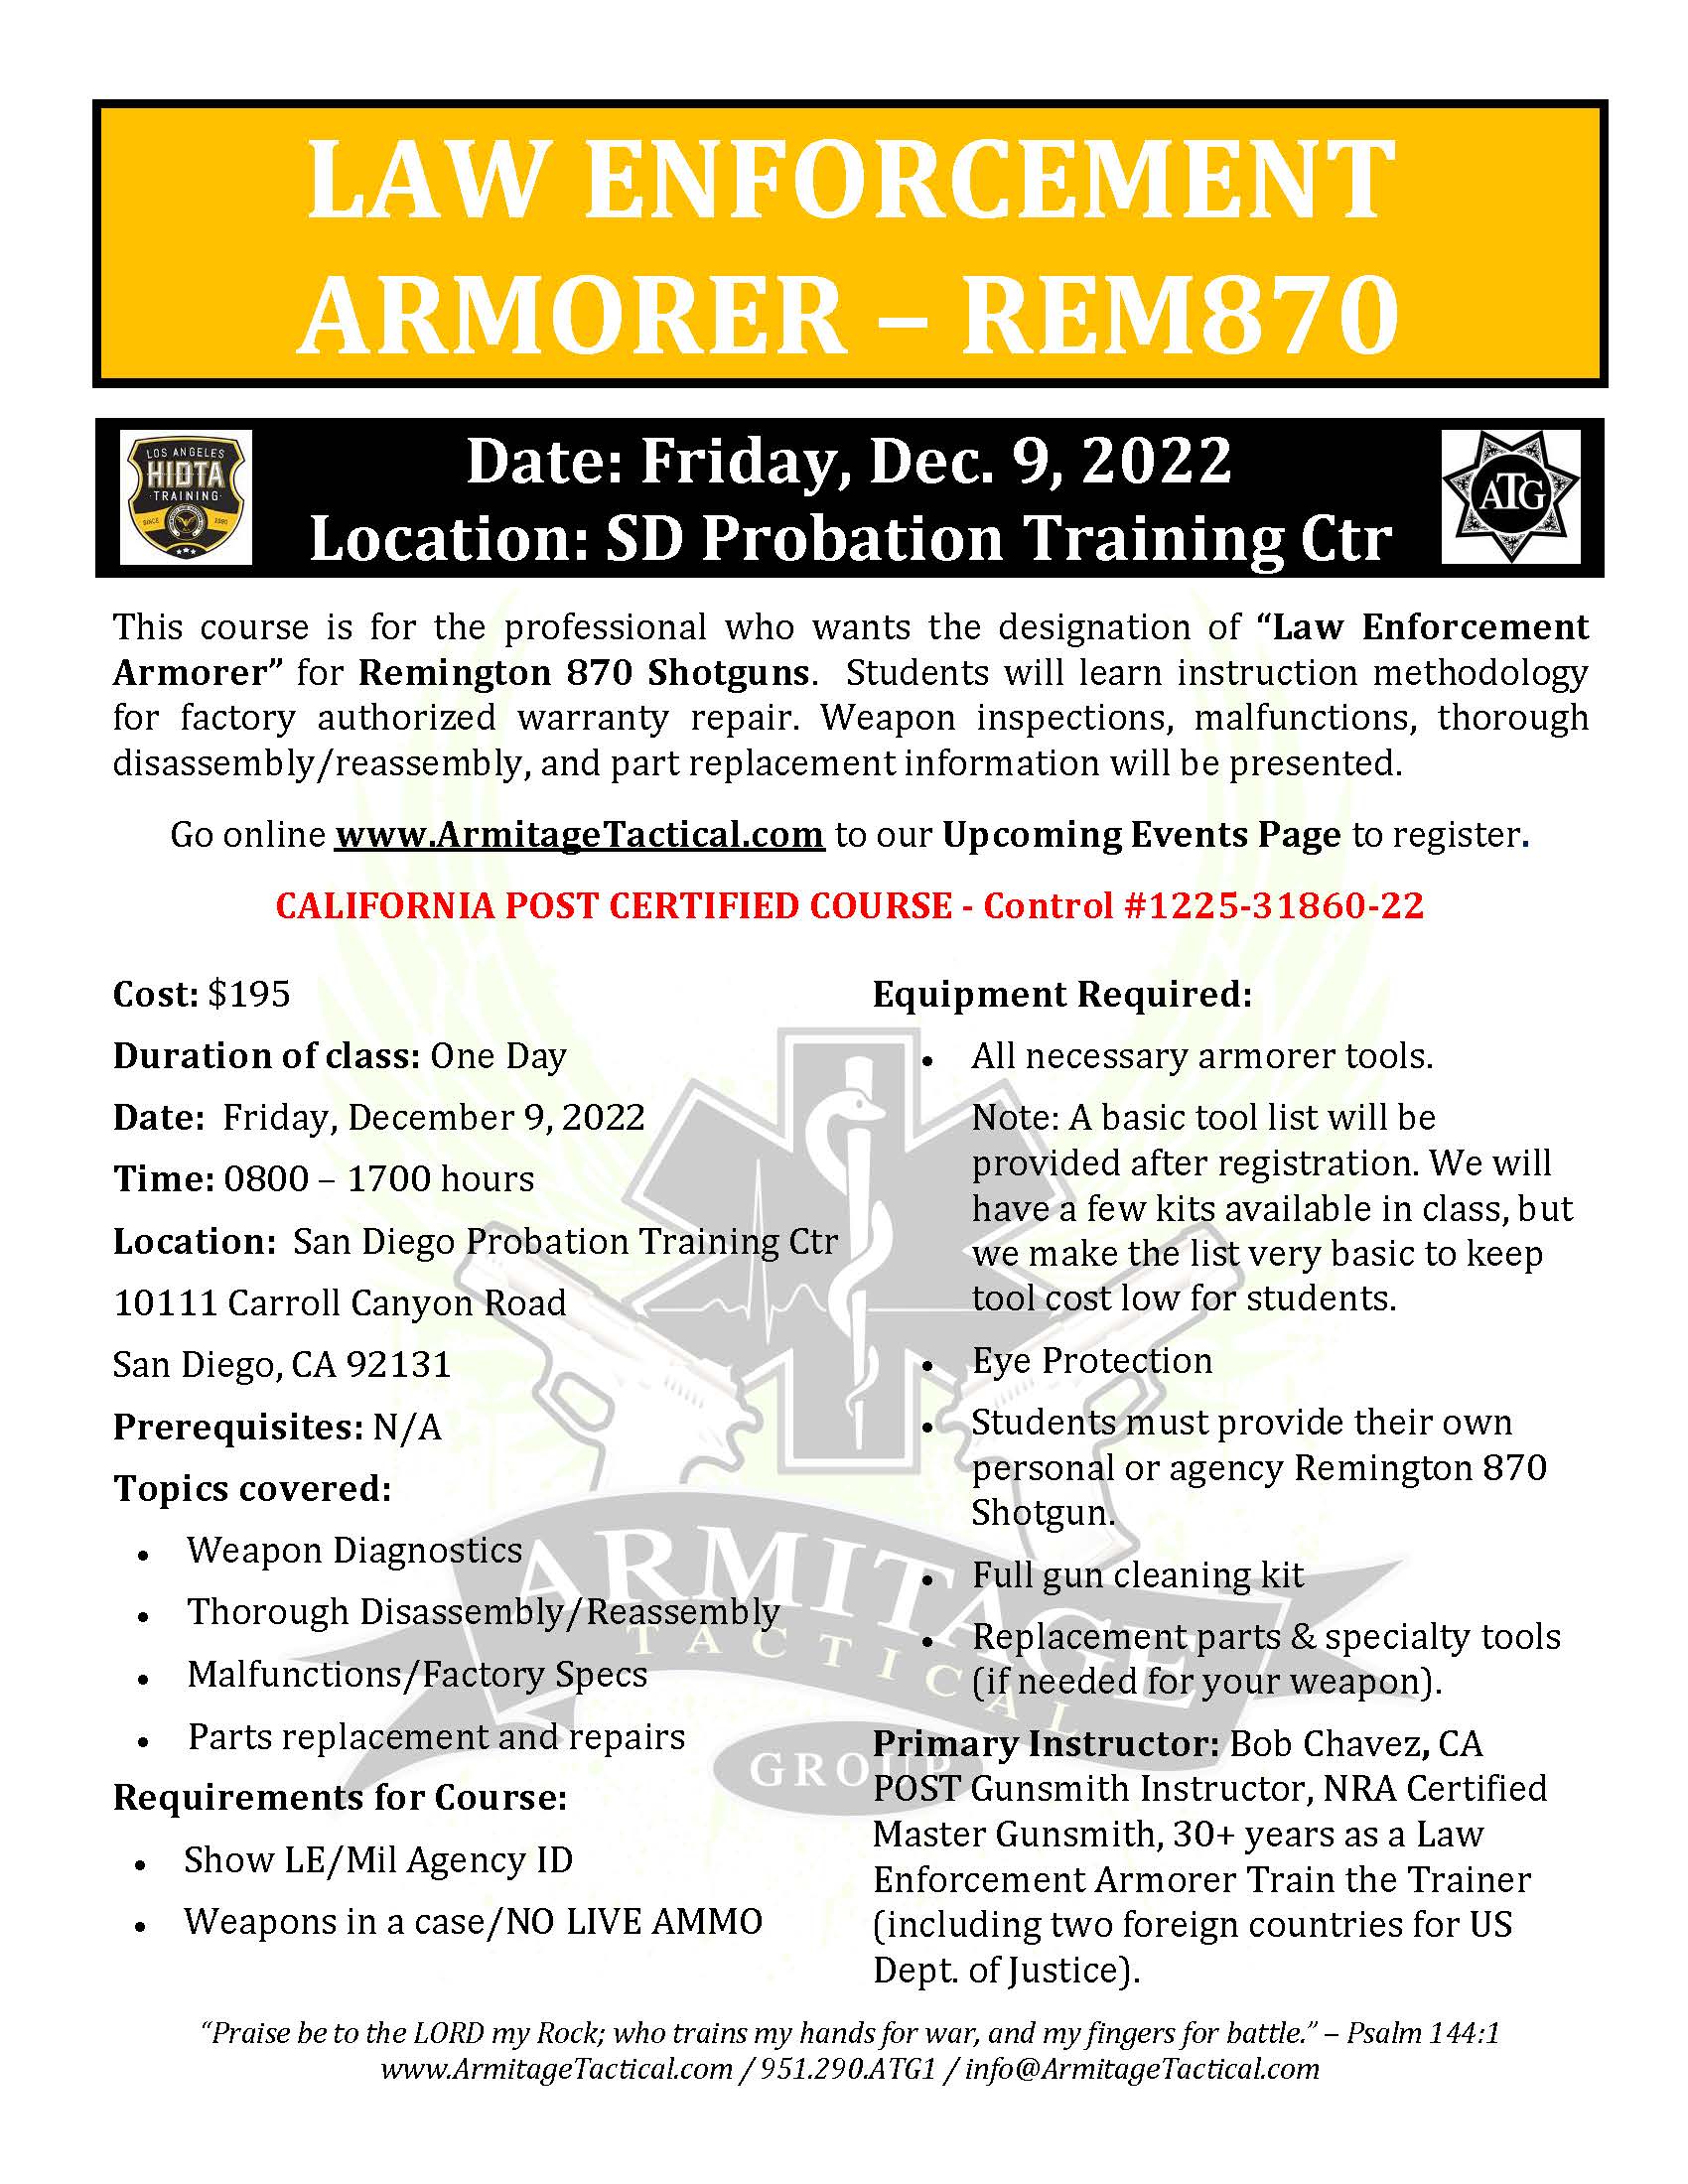 2022/12/09 - Remington 870 LE Armorer's Course - San Diego, CA